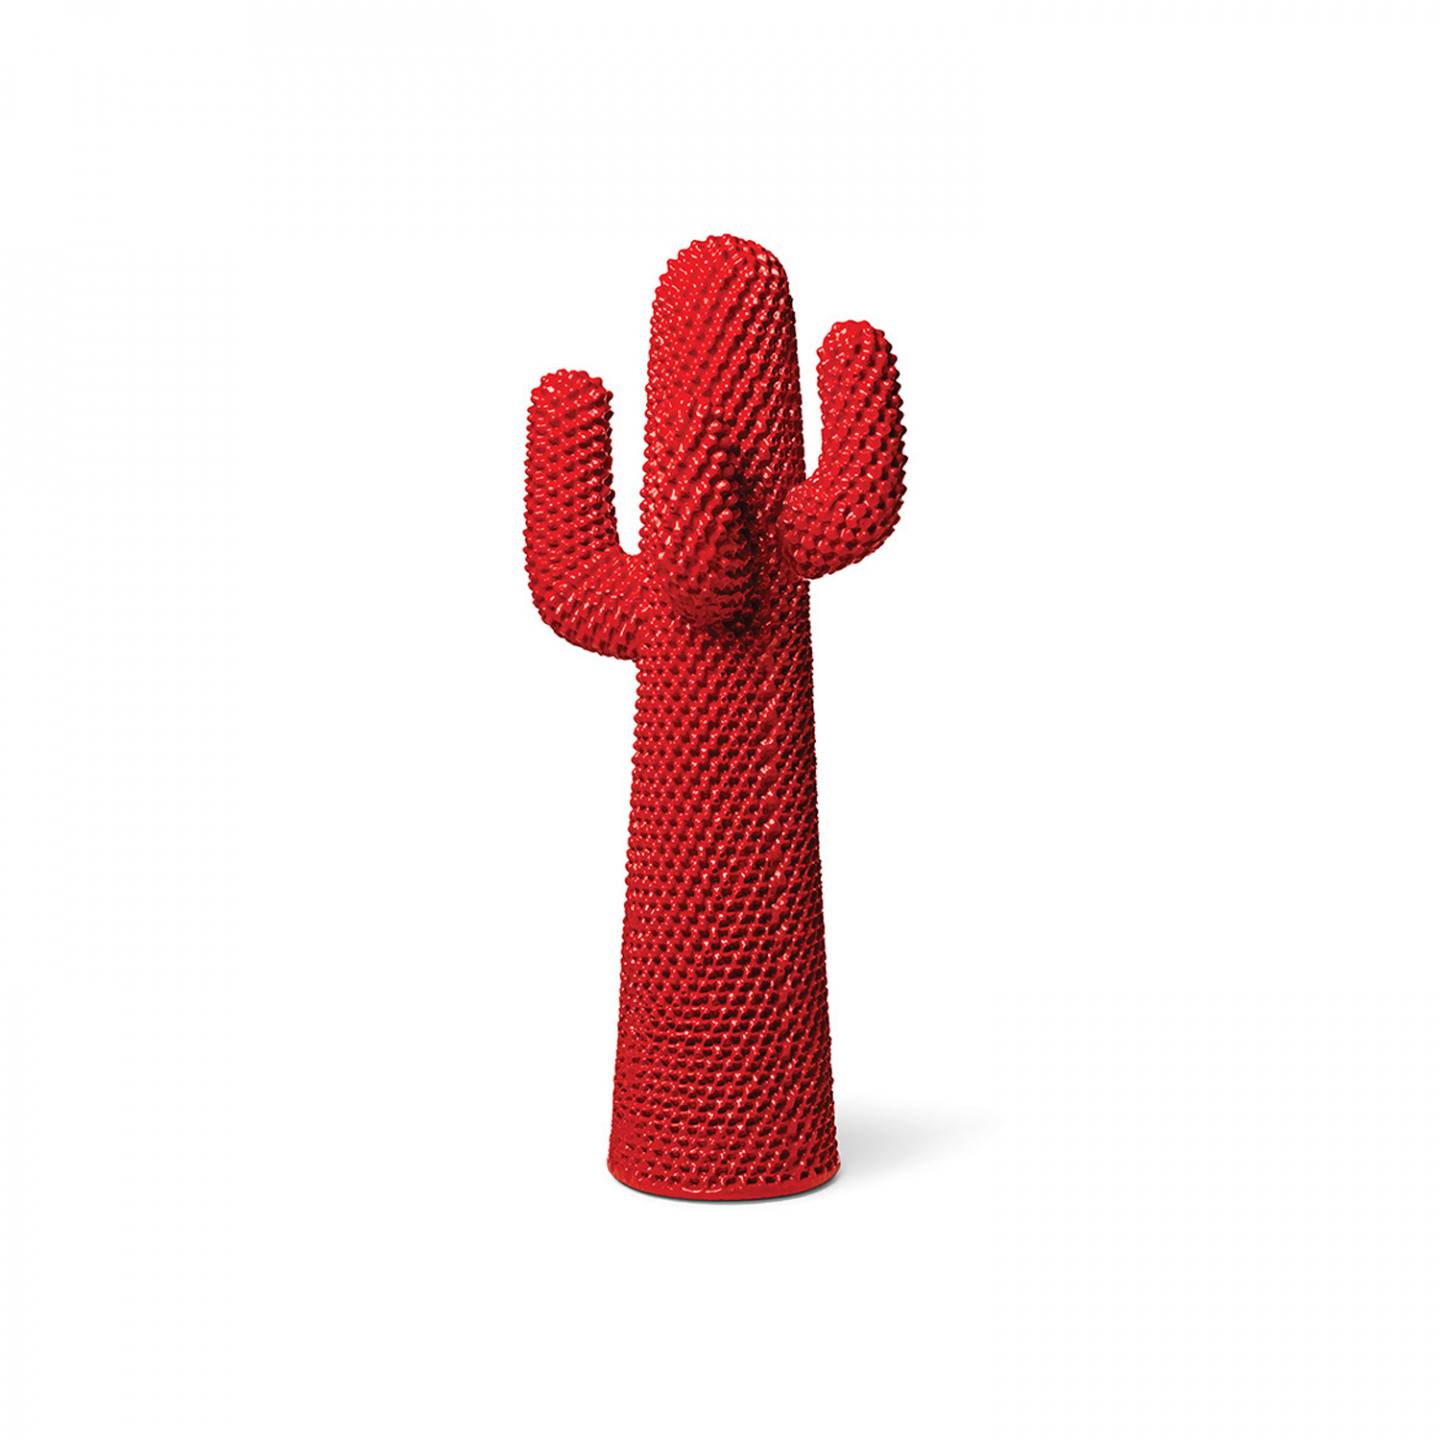 cactus (3)